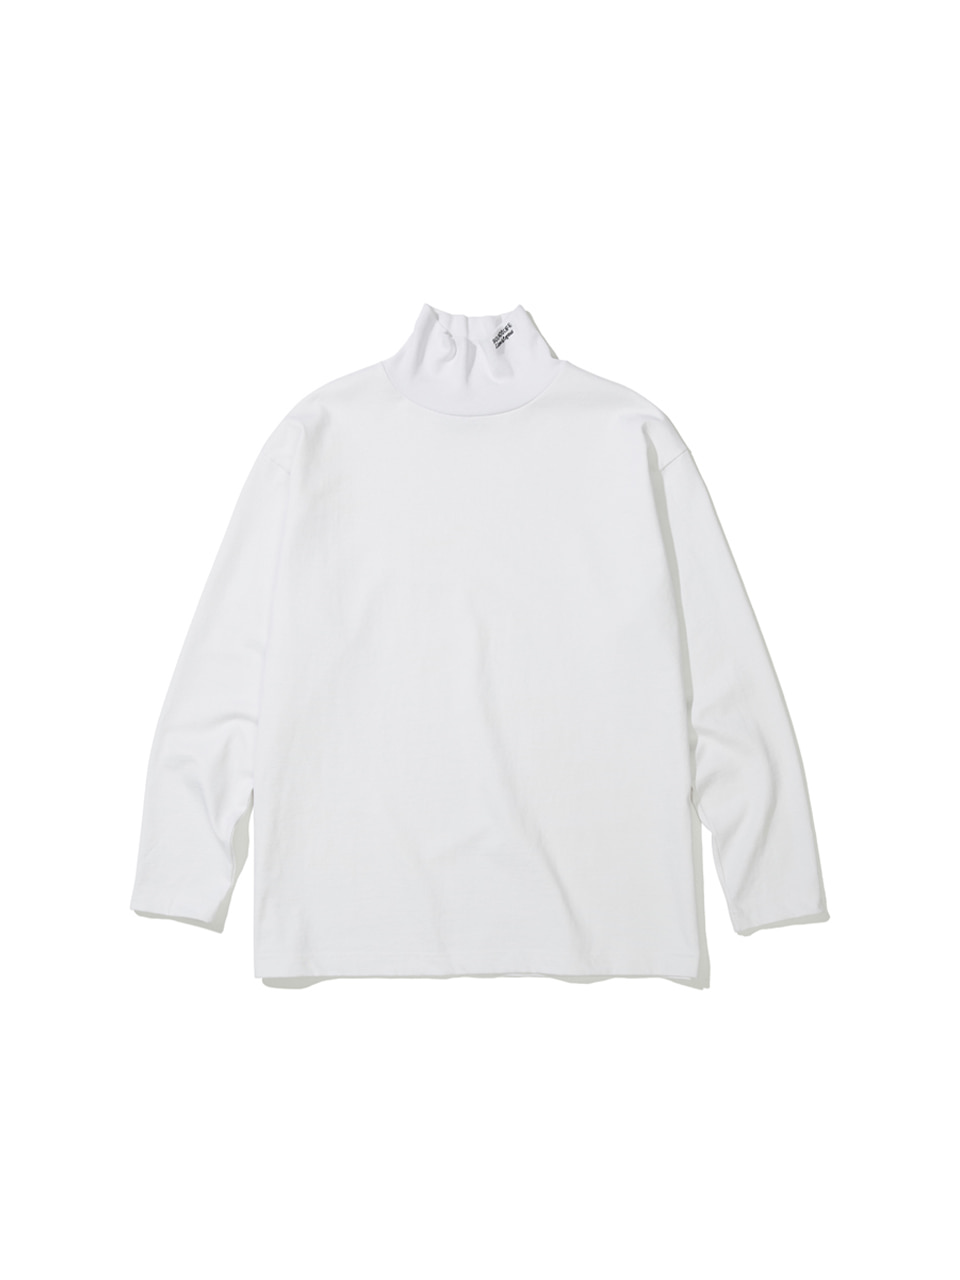 SOUNDSLIFE - Mock Neck Long Sleeve T-Shirt White